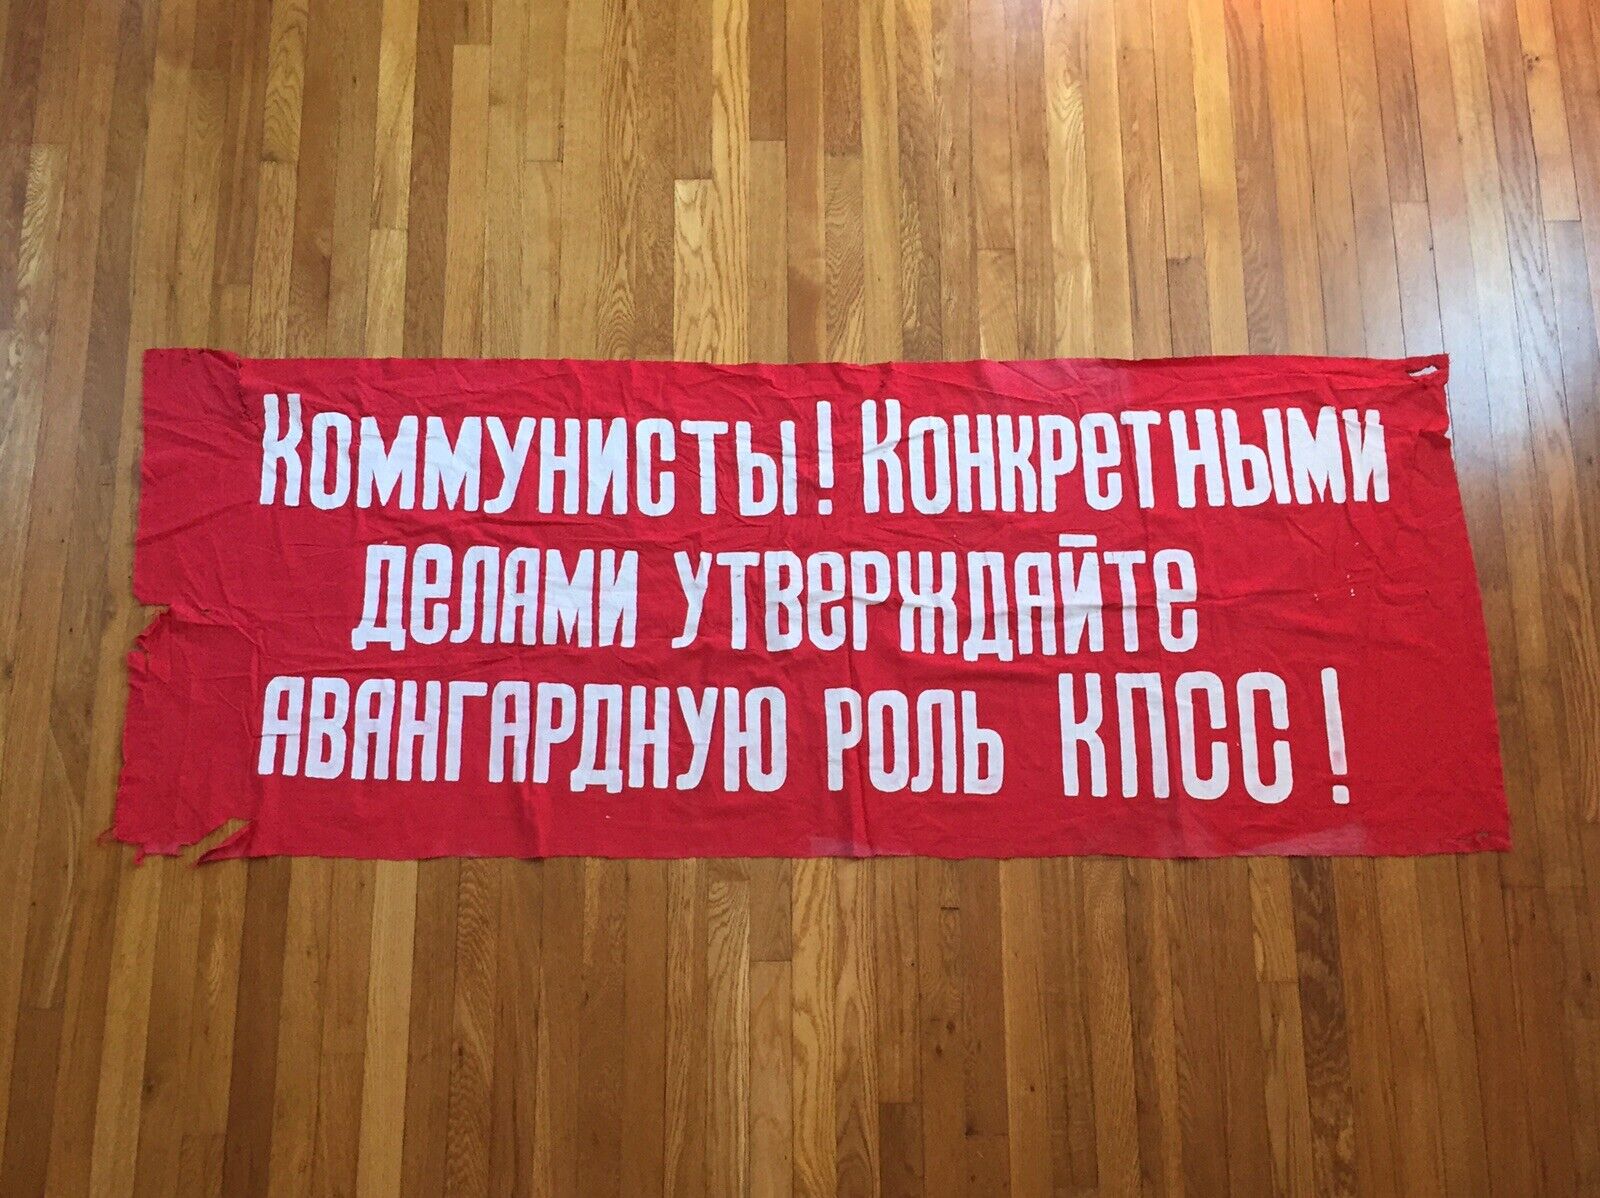 WW2 Era / Russian Soviet Union / Communist Banner / CPSU /6 FT Estate Collection